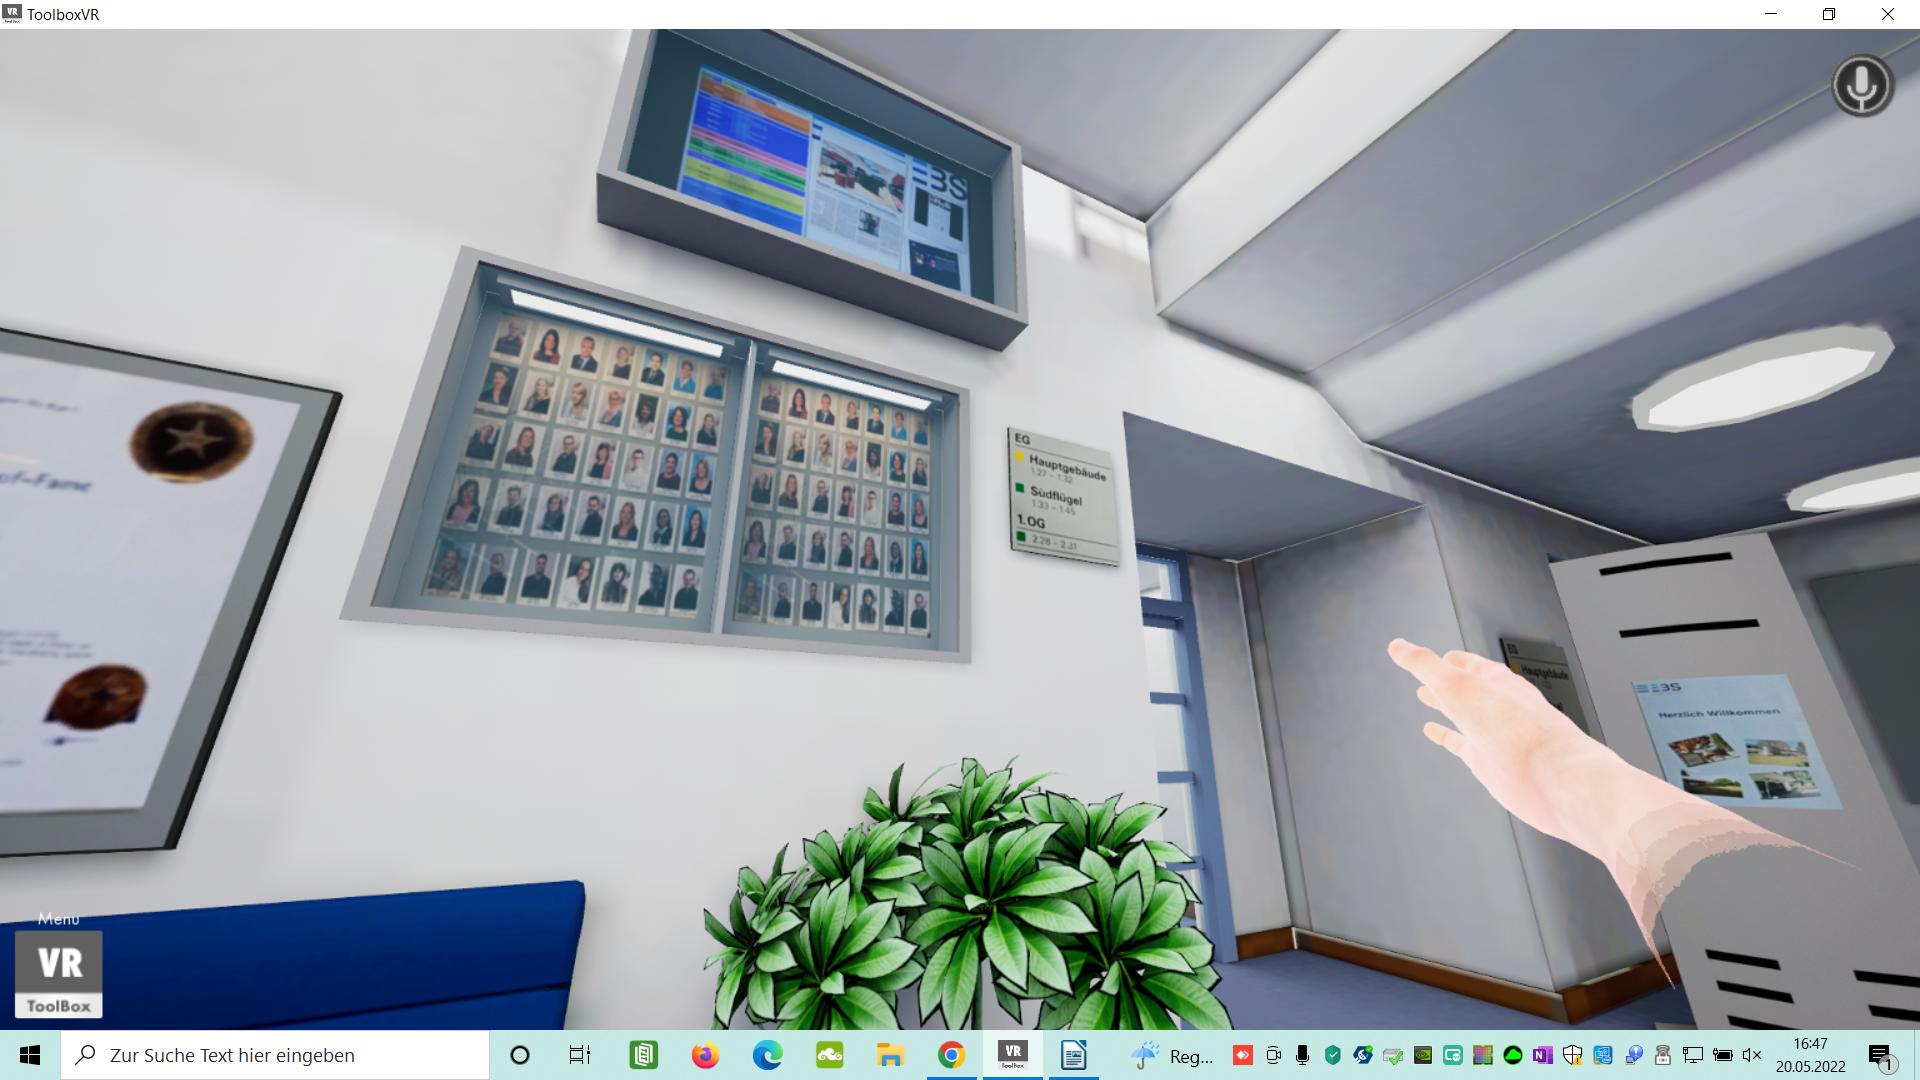 Noch sind die Info-Kästen im virtuellen Foyer der Erich-Bracher-Schule nur Schmuckelemente. Demnächst könnte es auch einen interaktiven Vertretungs- oder Raumplan in VR geben. Foto: © WIS/EBS/Screenshot